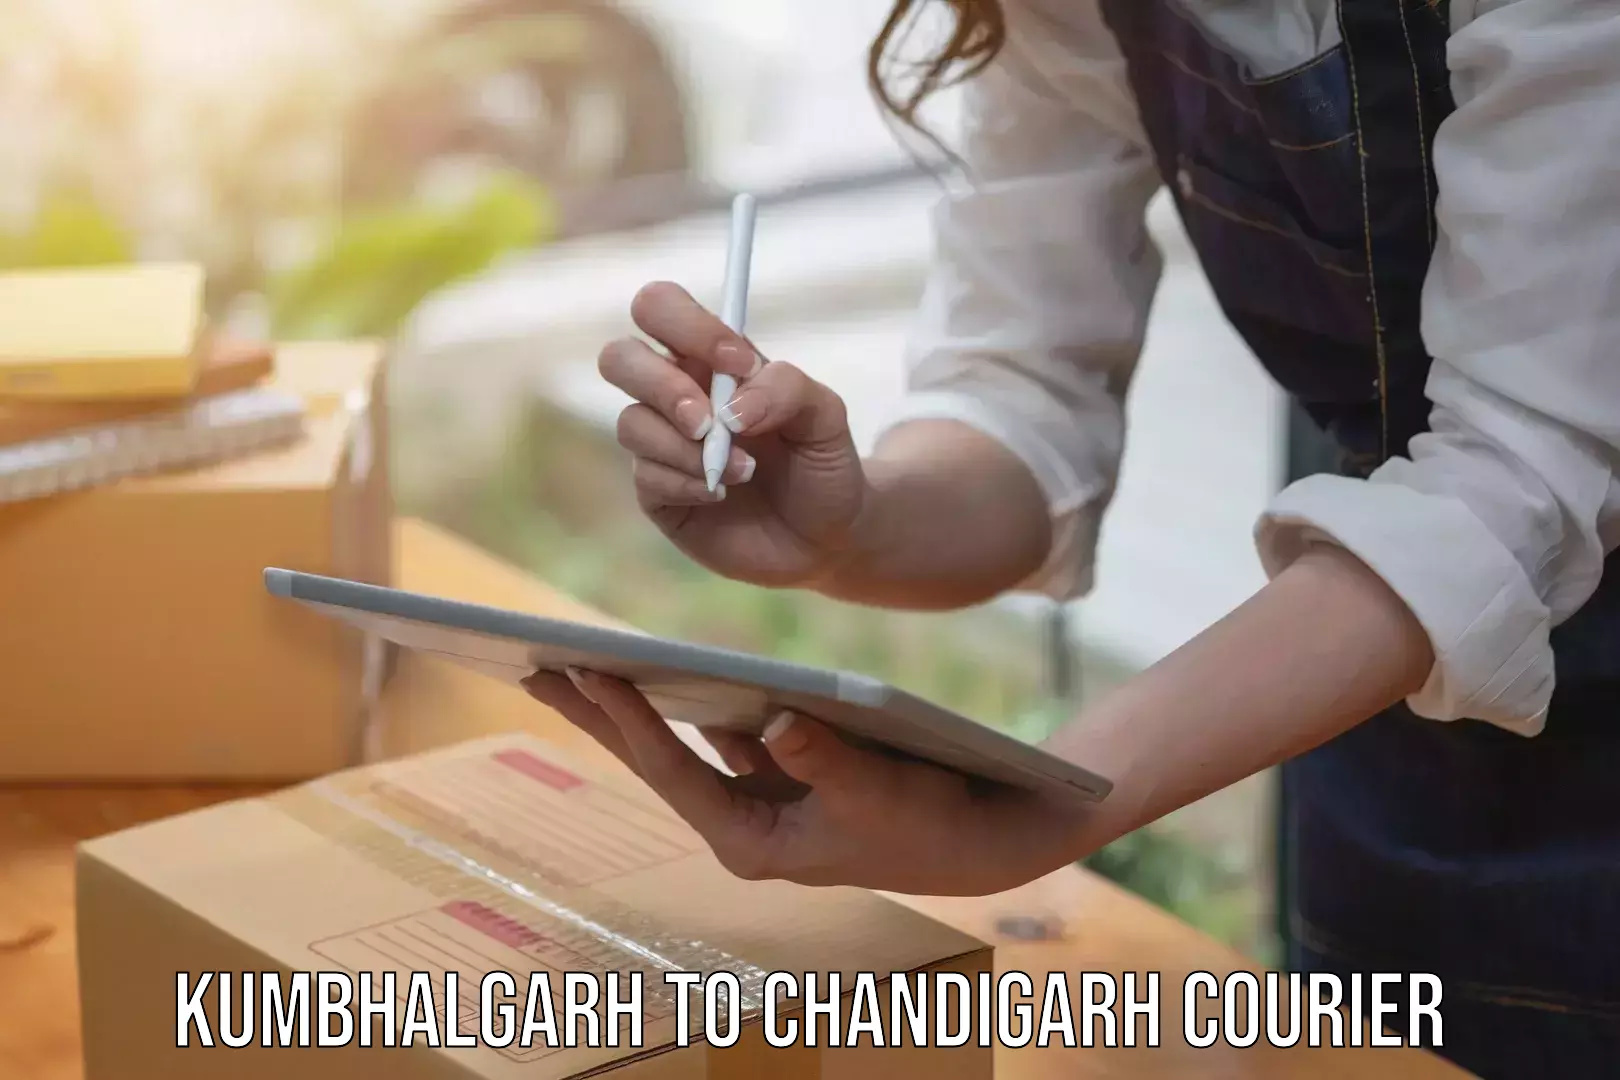 Versatile courier offerings Kumbhalgarh to Chandigarh